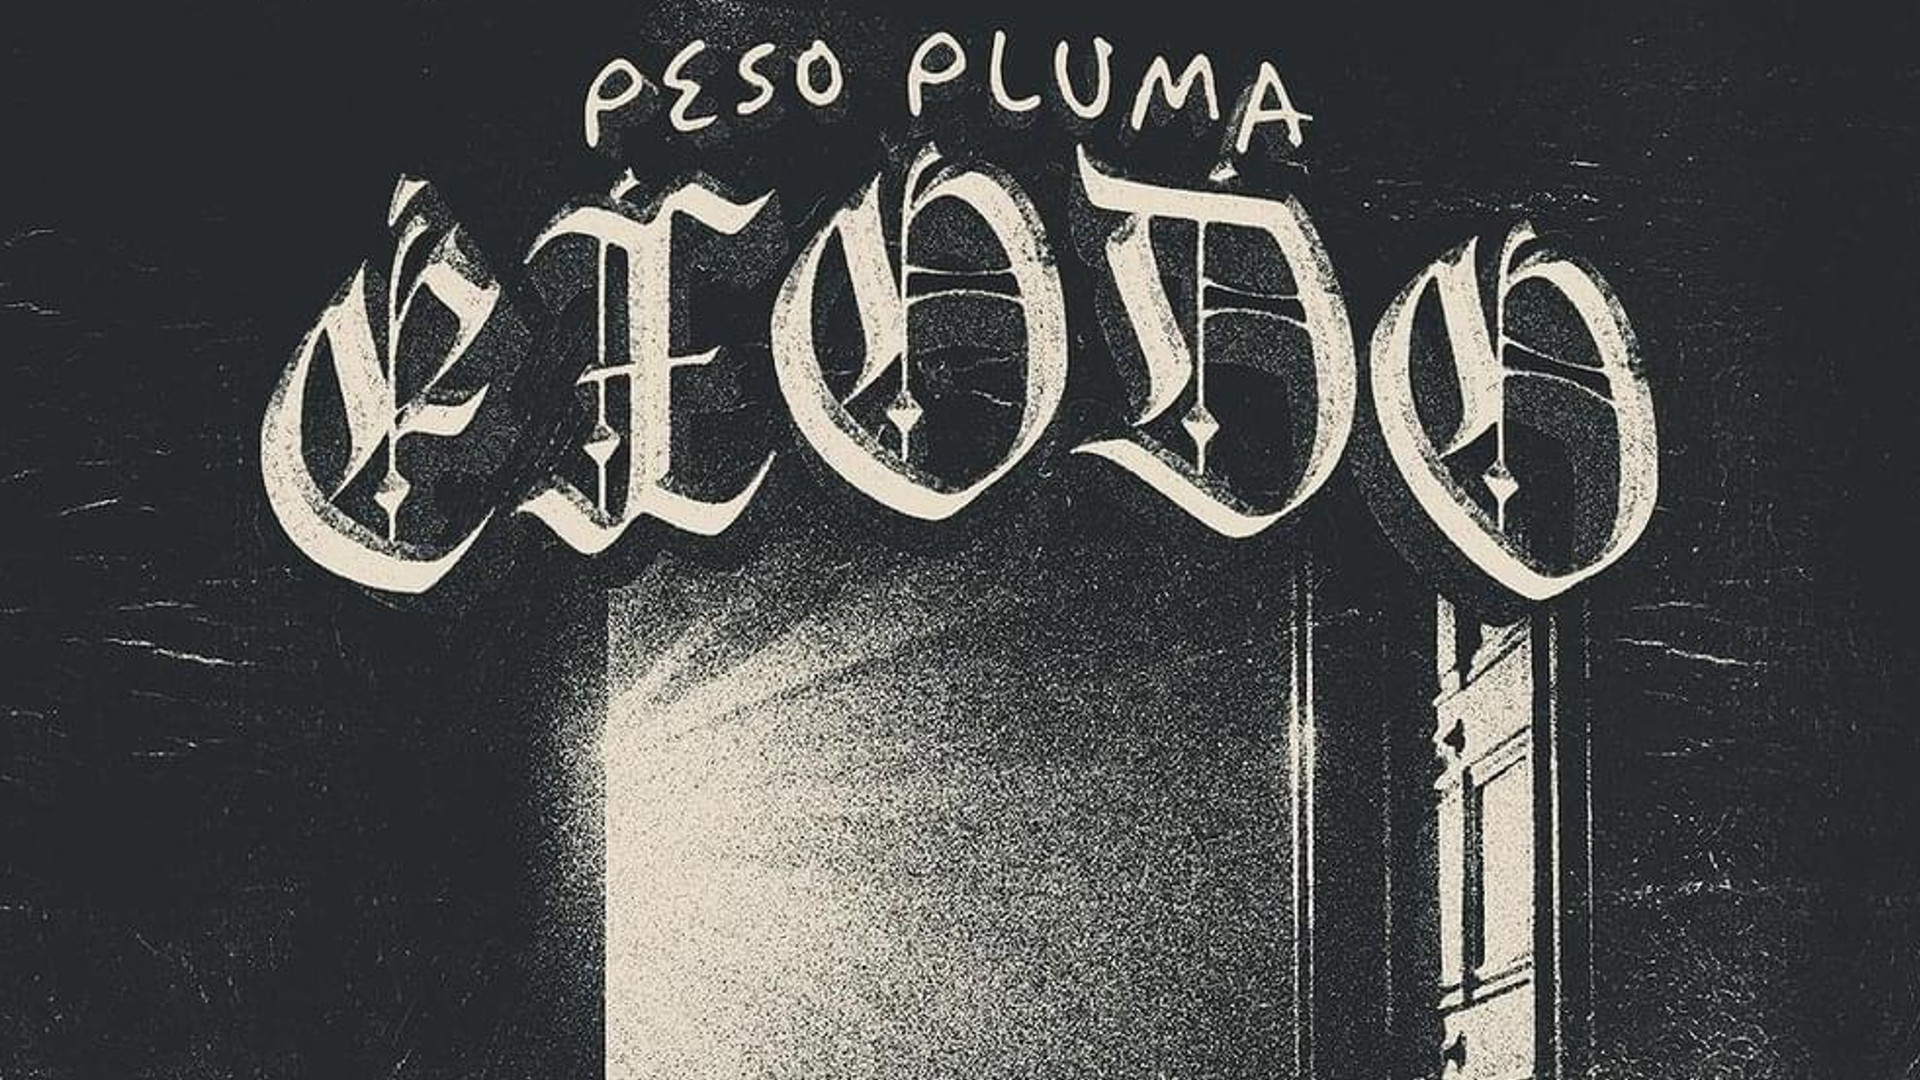 Imagen de la portada del álbum "Éxodo" de Peso Pluma, destacando su fusión única de corridos tumbados y reggaetón.